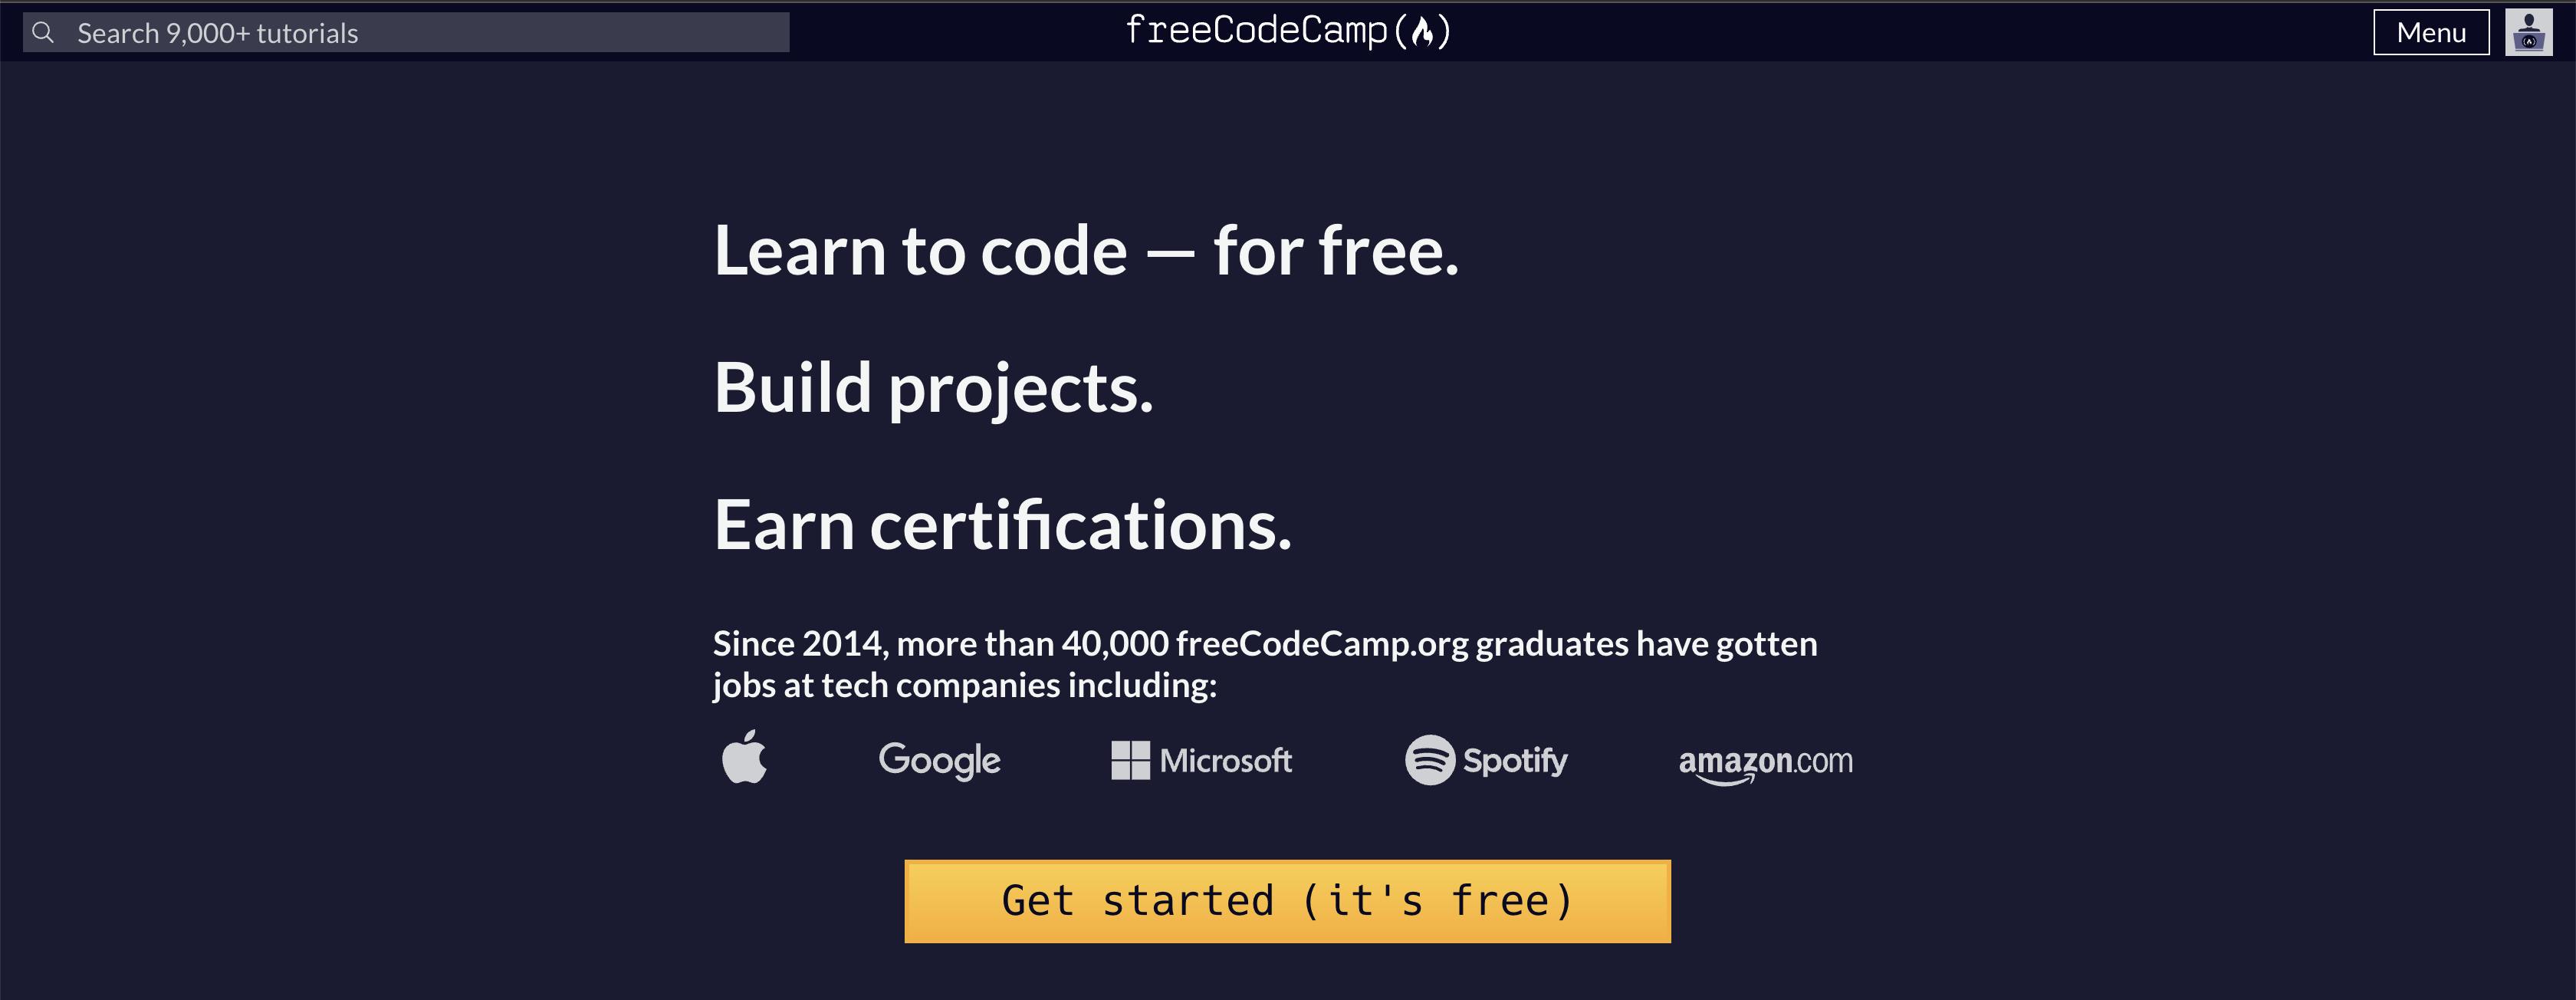 screenshot of the freeCodeCamp.org homepage